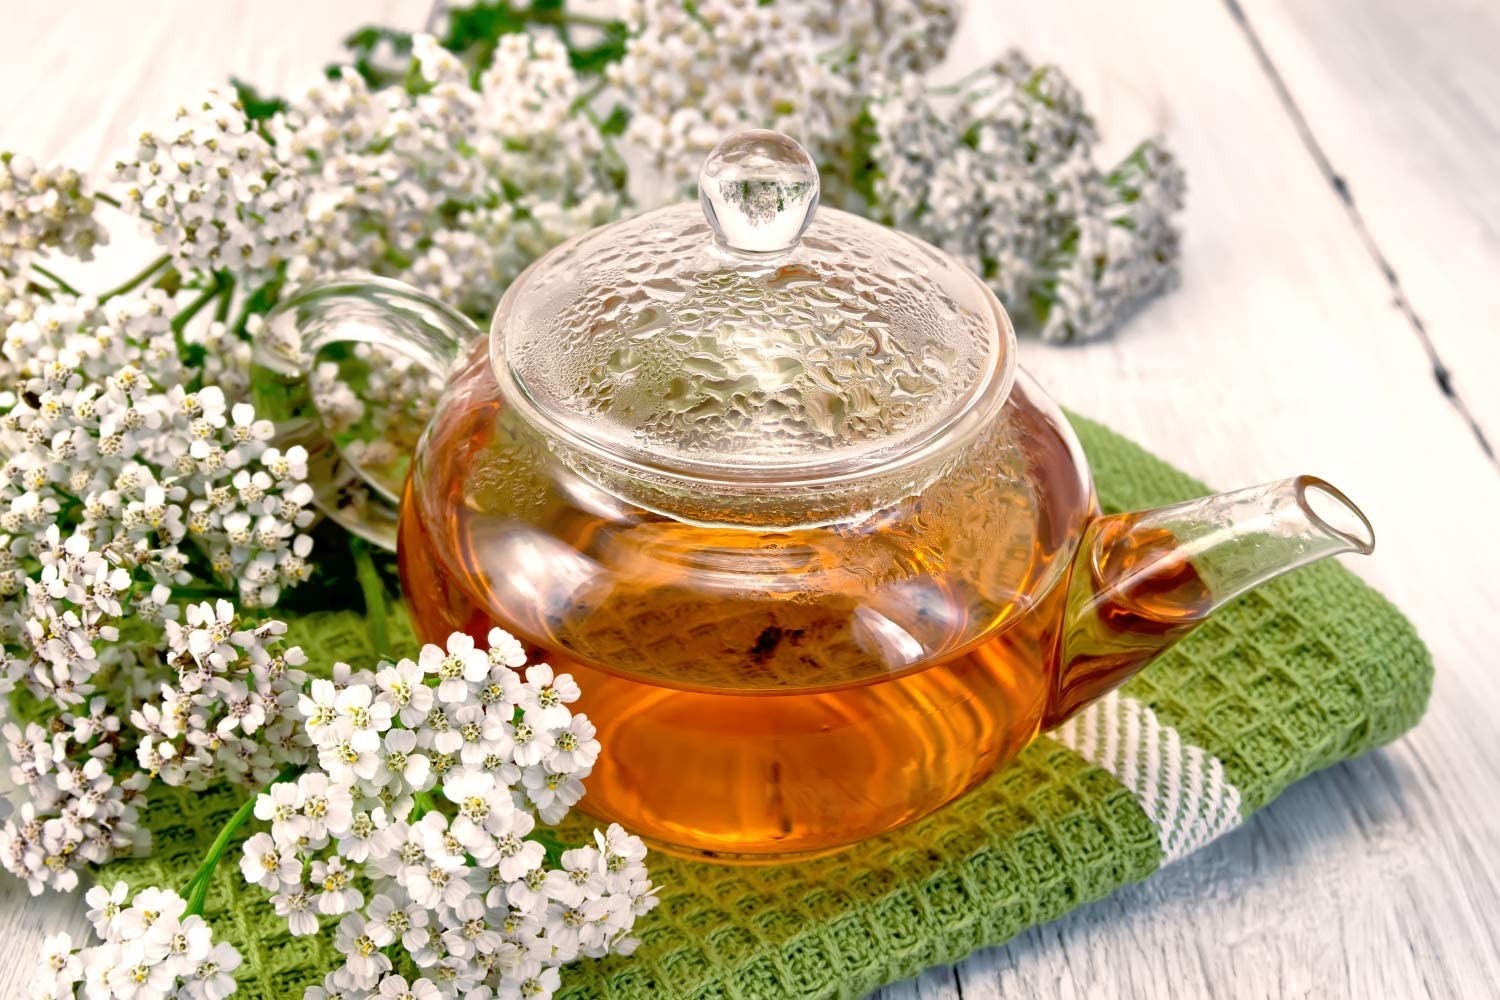 Cum sa folosiți ceaiul din coada soricelului si ce afectiuni trateaza… ginecologice, hepatice, ulcer, migrene, hemoroizi…